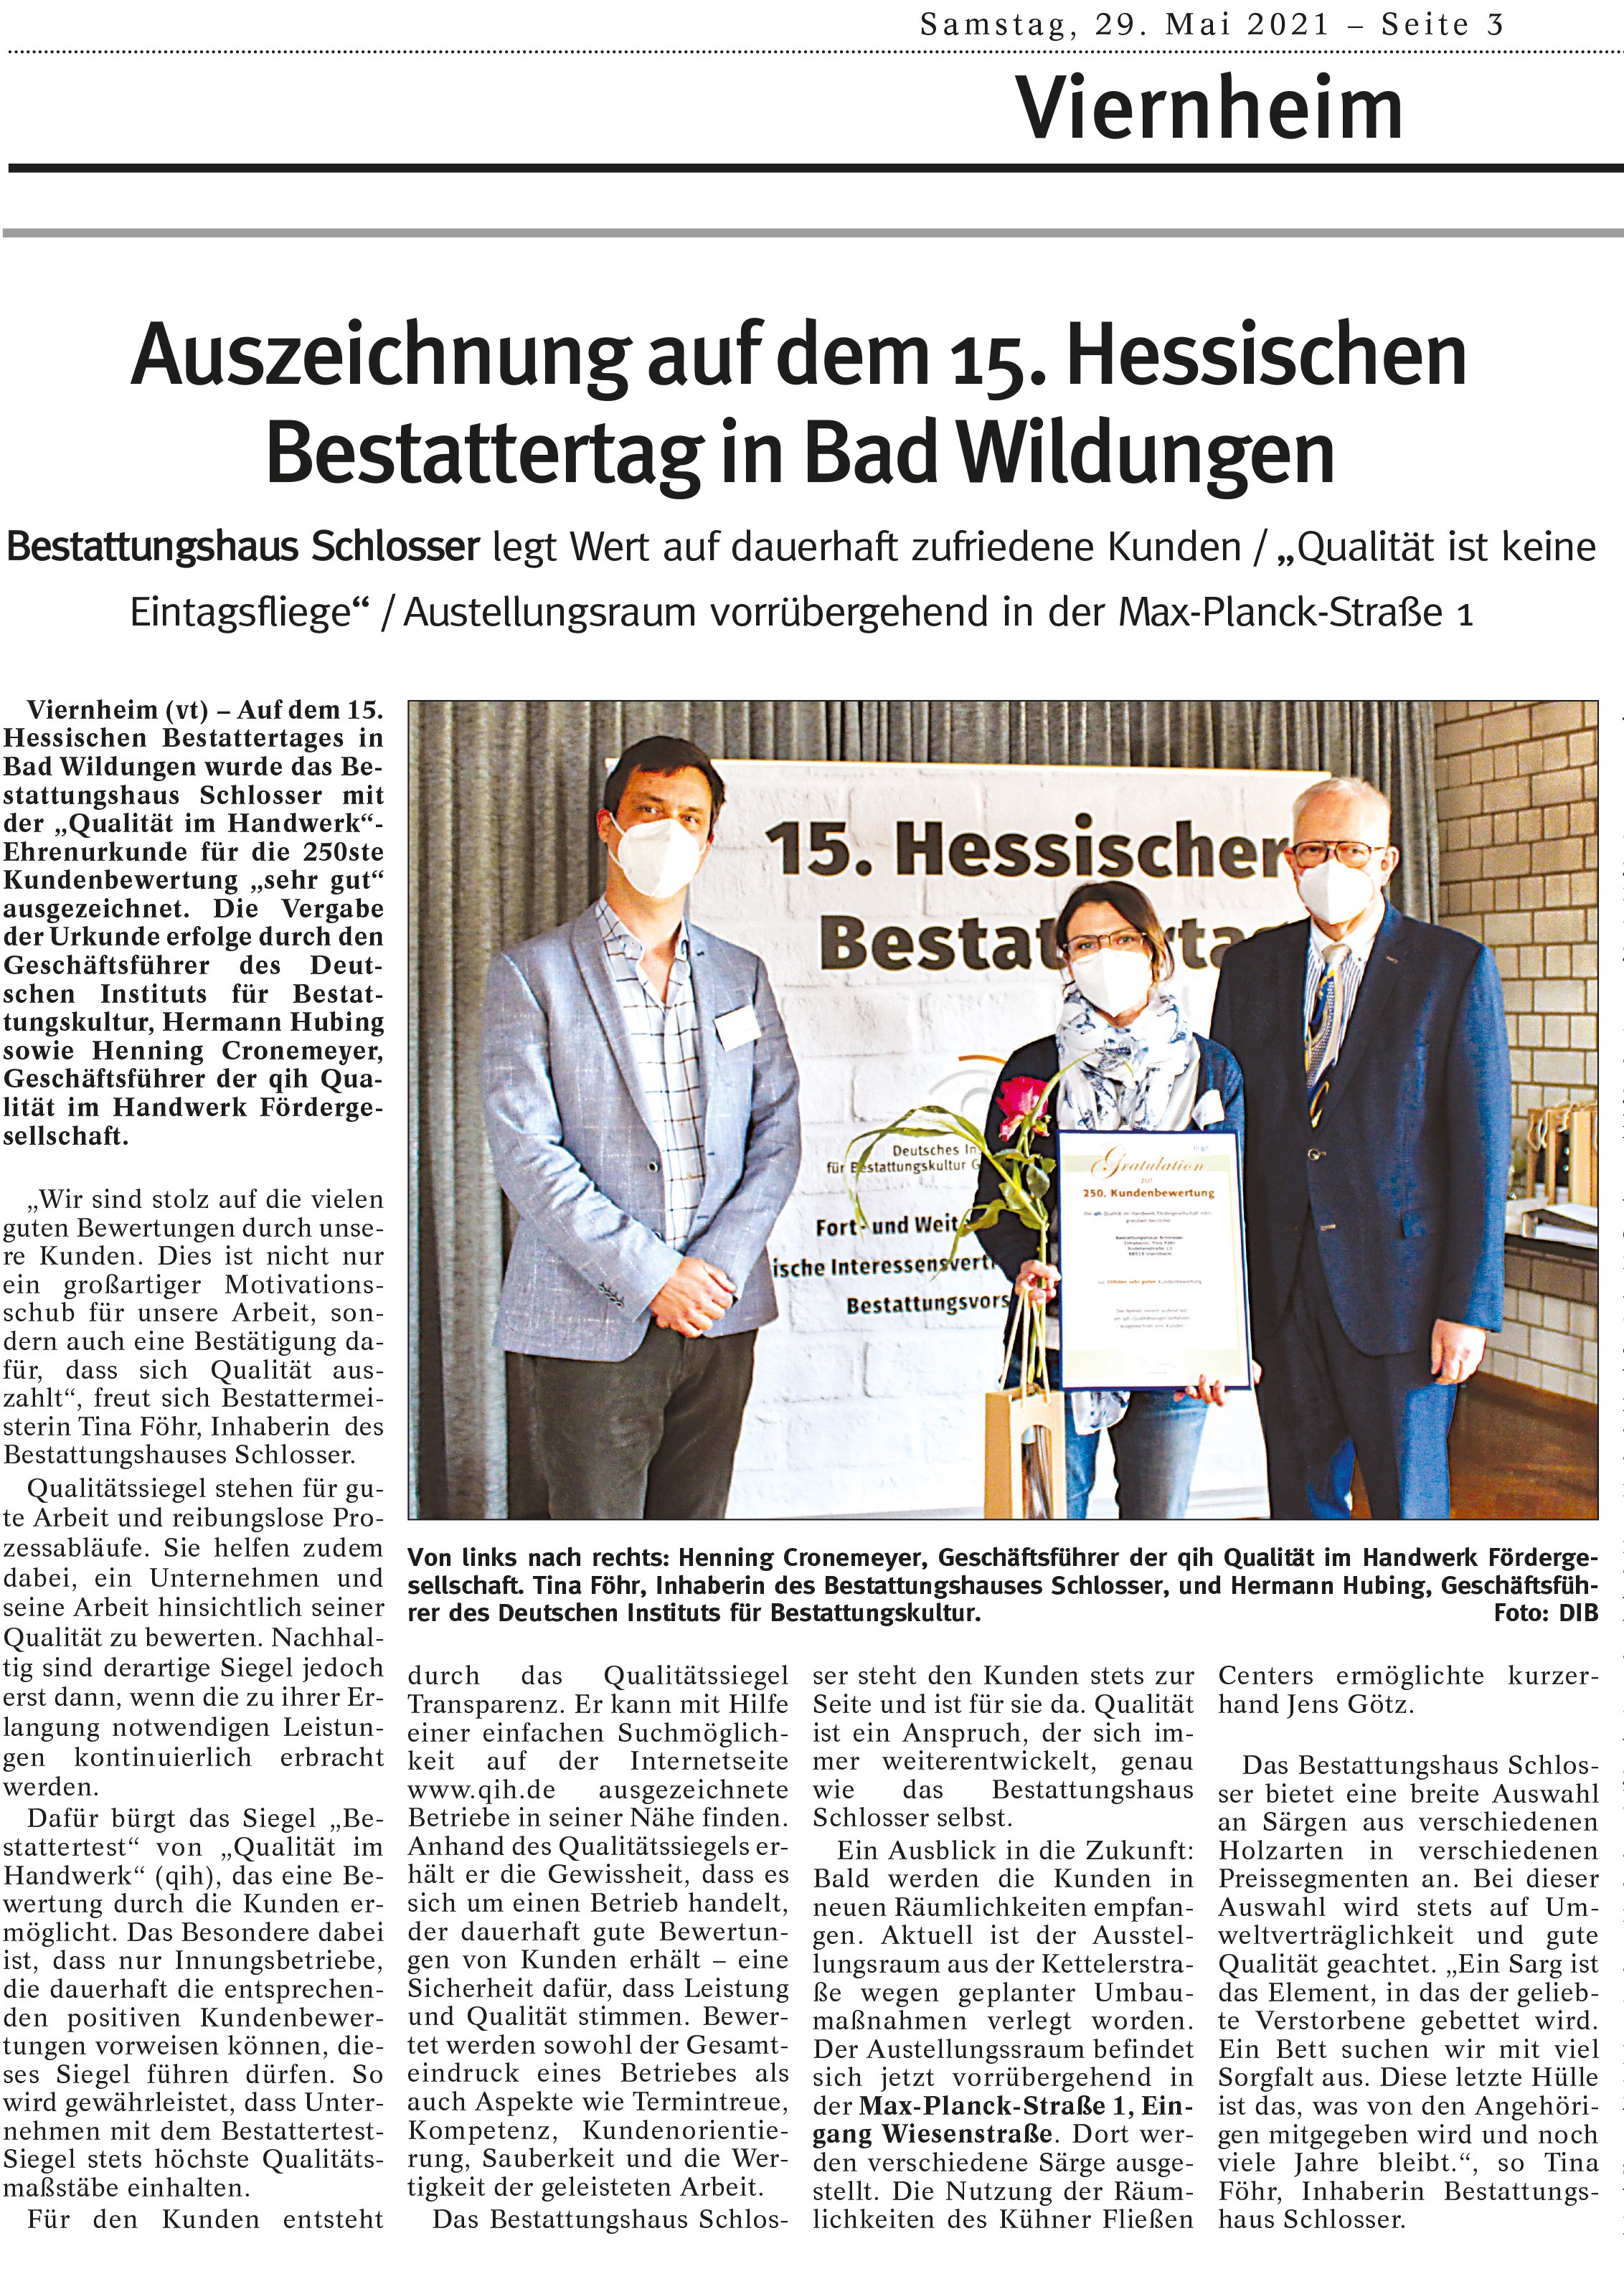 veröffentlicht im Tageblatt Viernheim am 29. Mai 2021:  Auszeichnung auf dem 15. Hessischen Bestattertag in Bad Bildungen